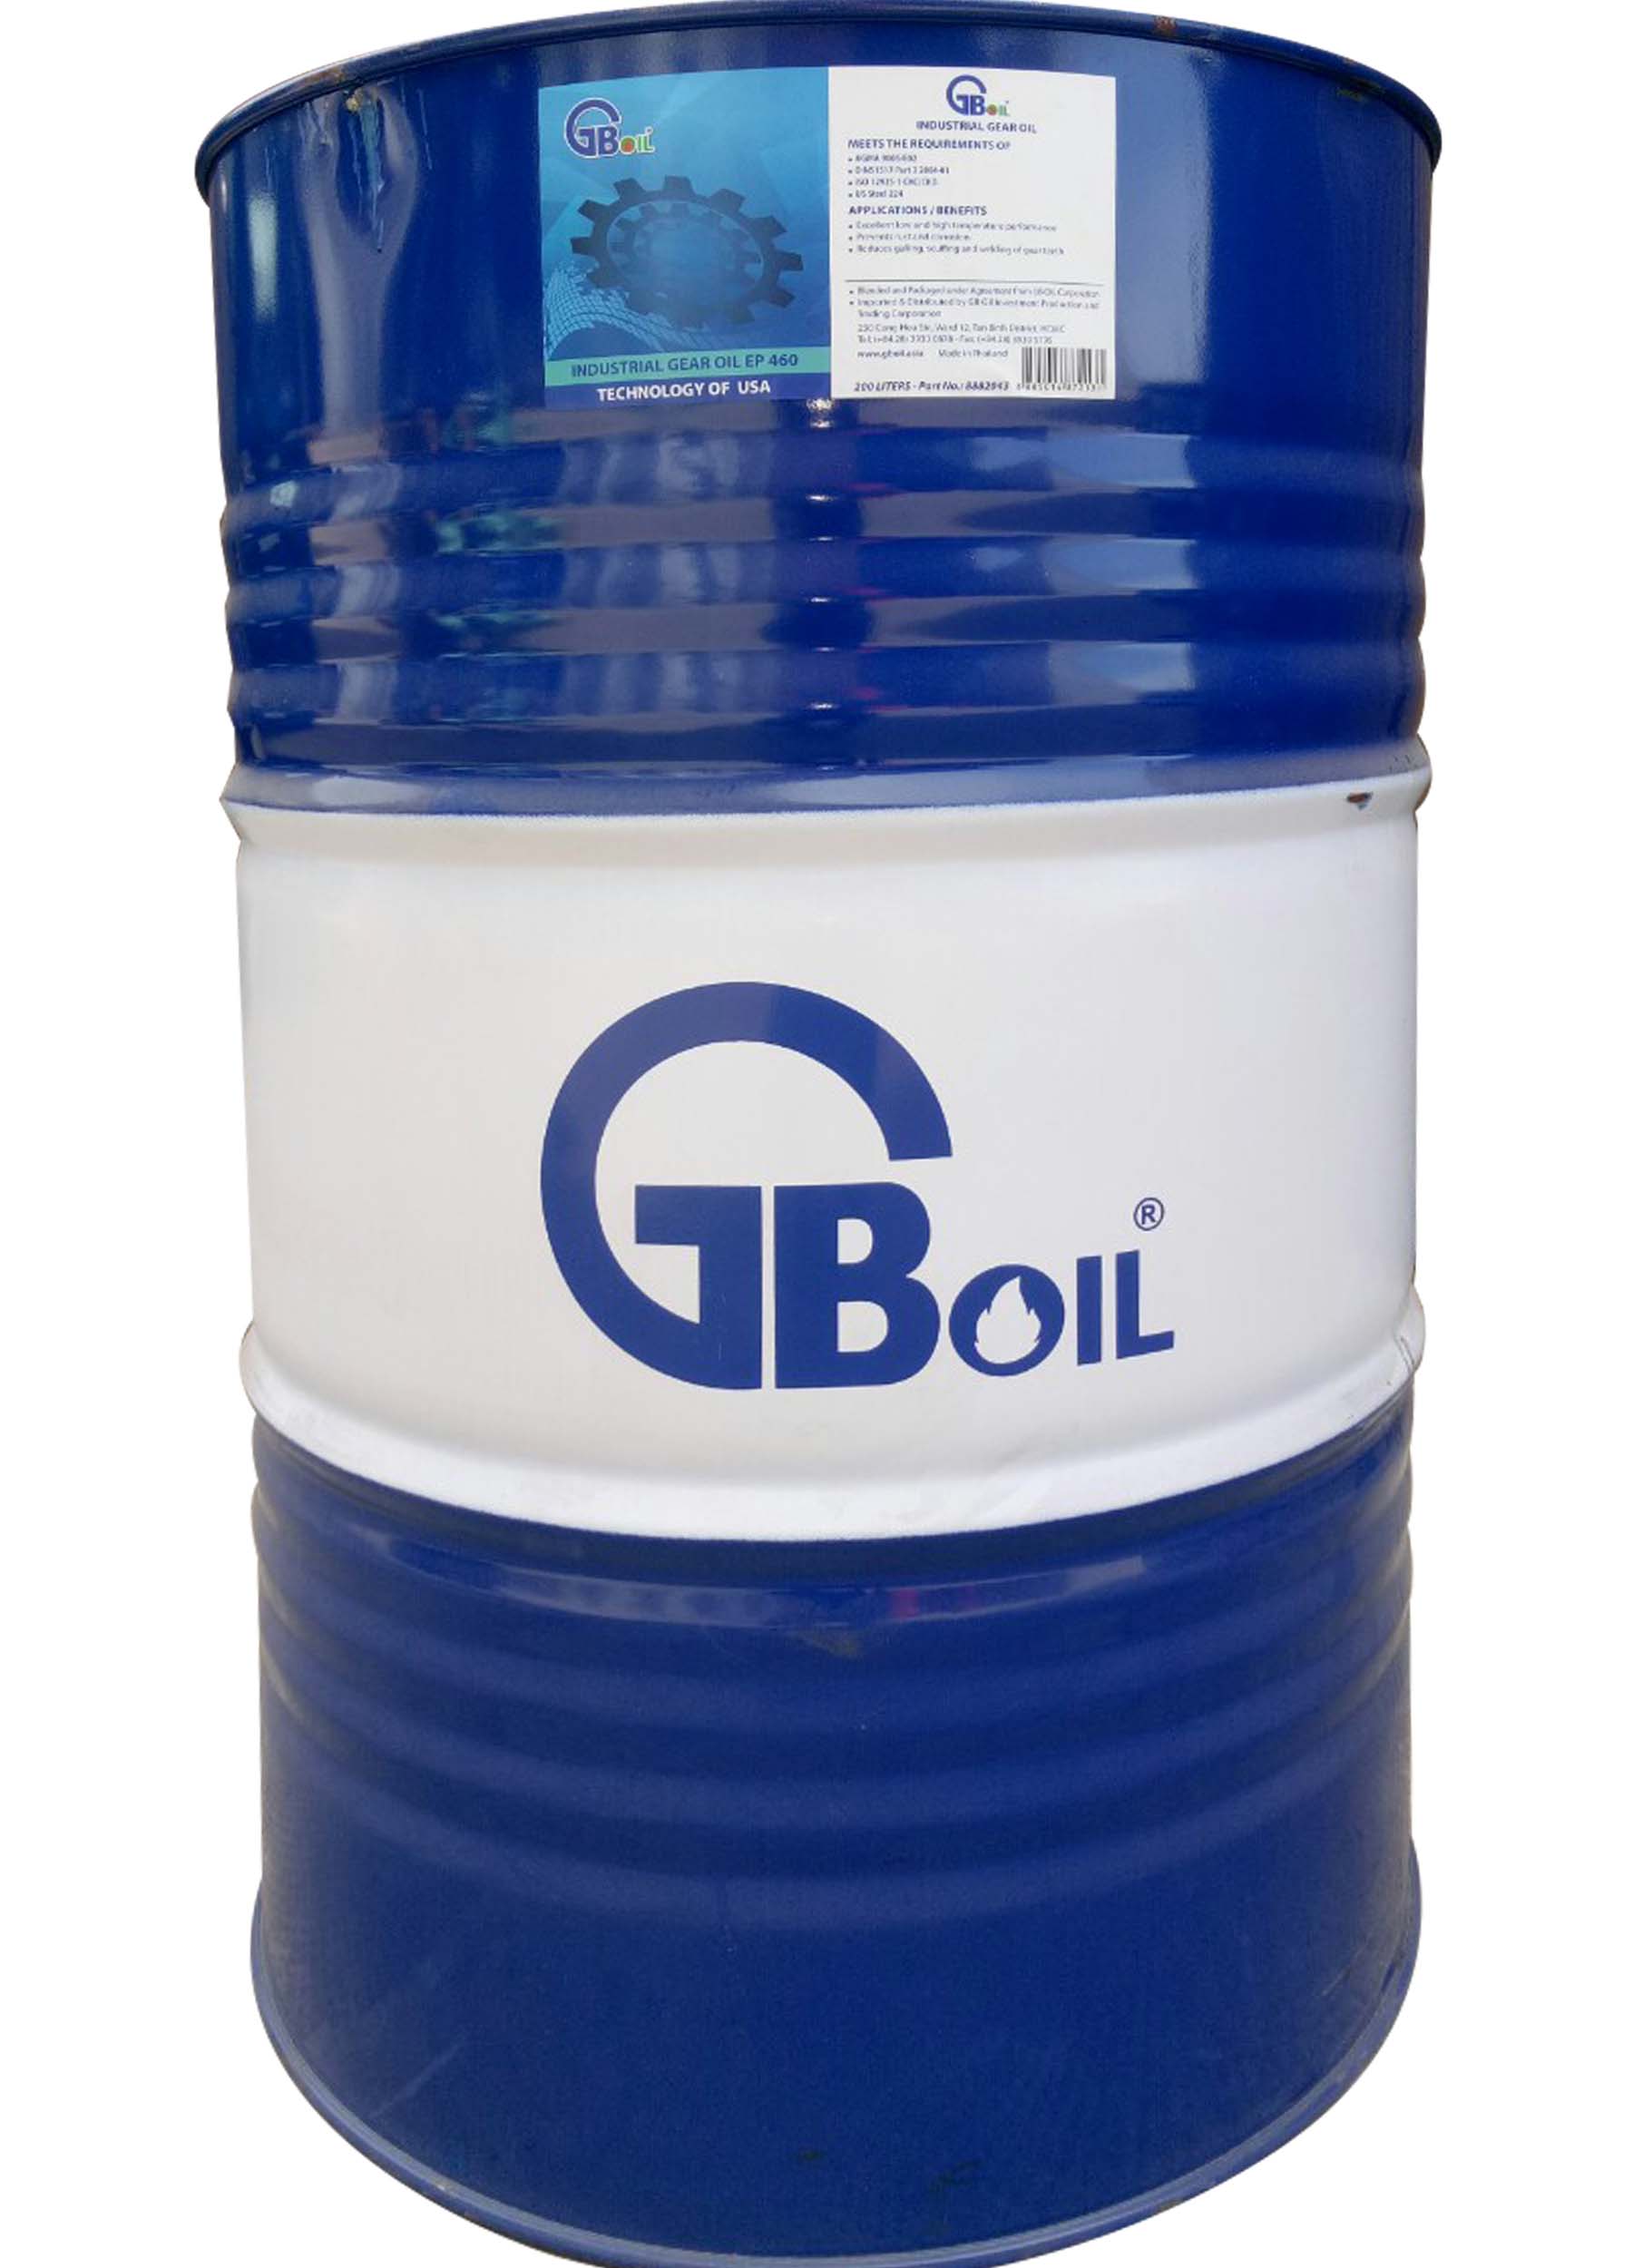 GB Industrial Gear Oil ISO 460